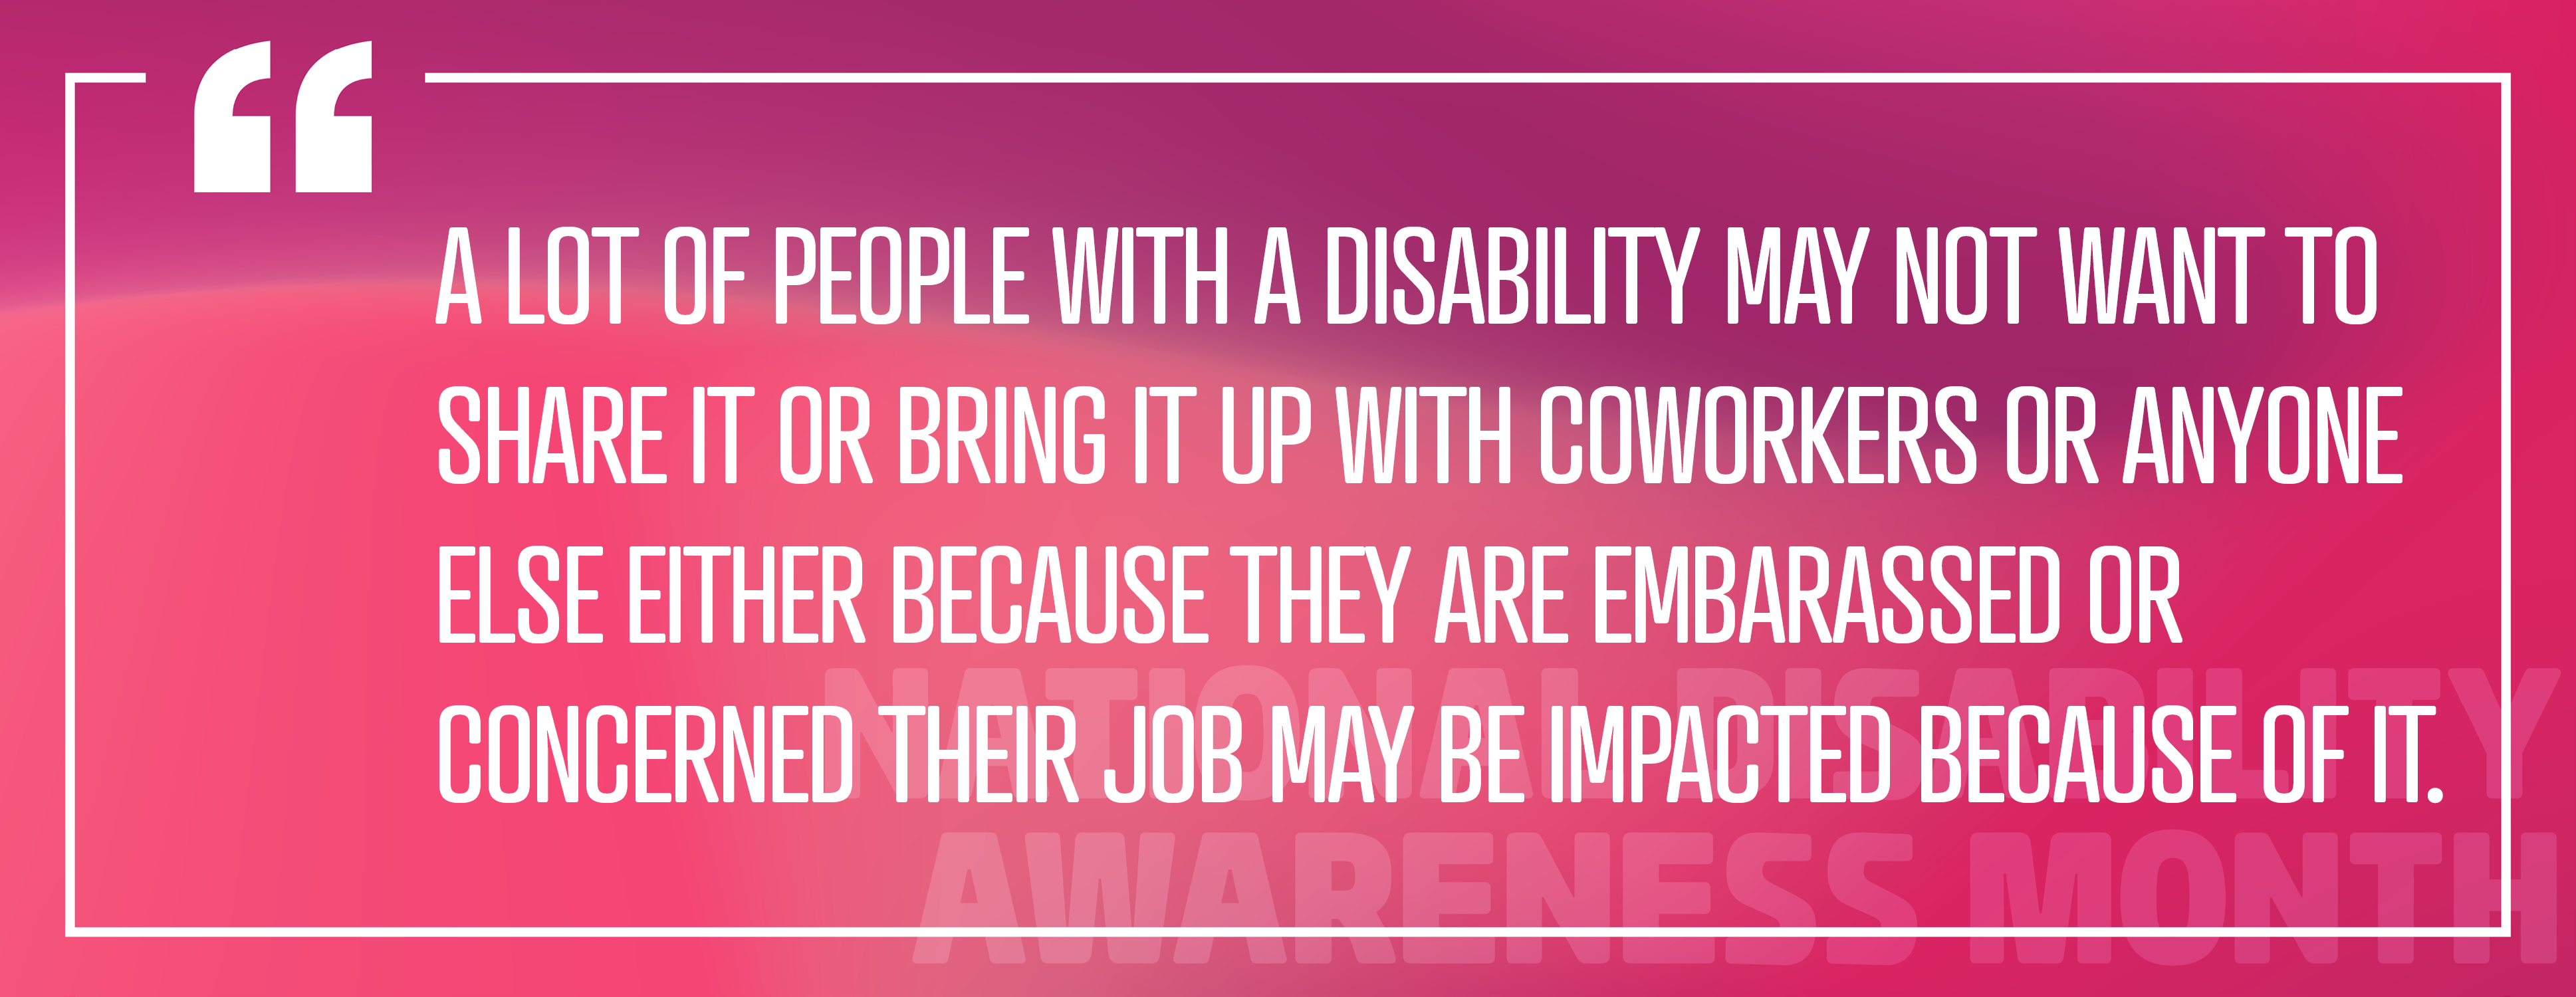 Image 3 : Emploi des personnes handicapées